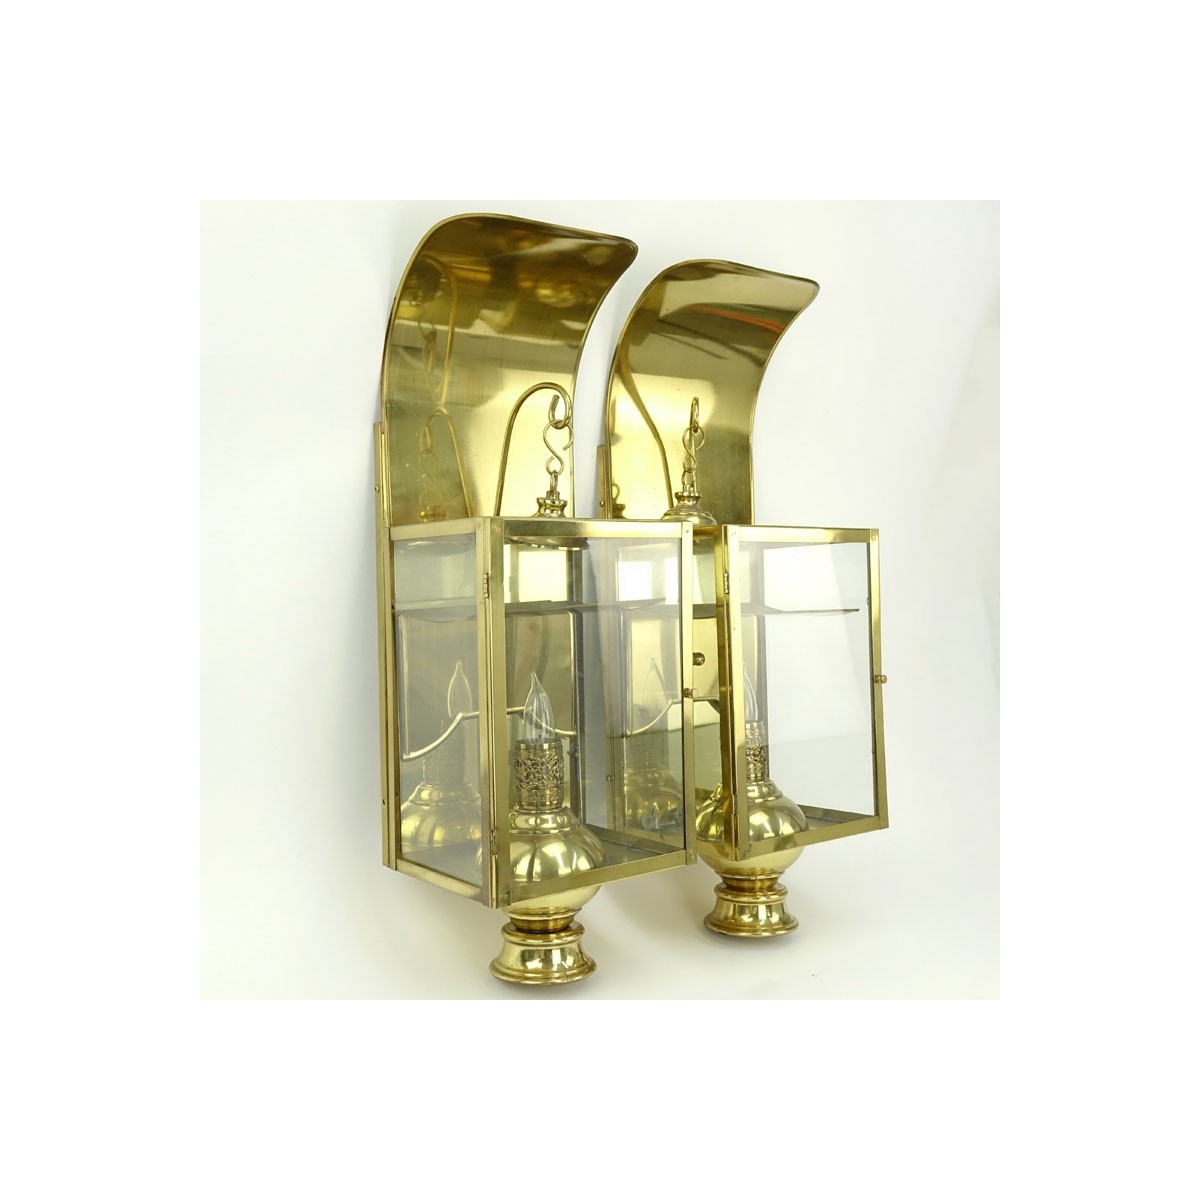 Pair of Modern Brass and Glass Wall Light Fixtures